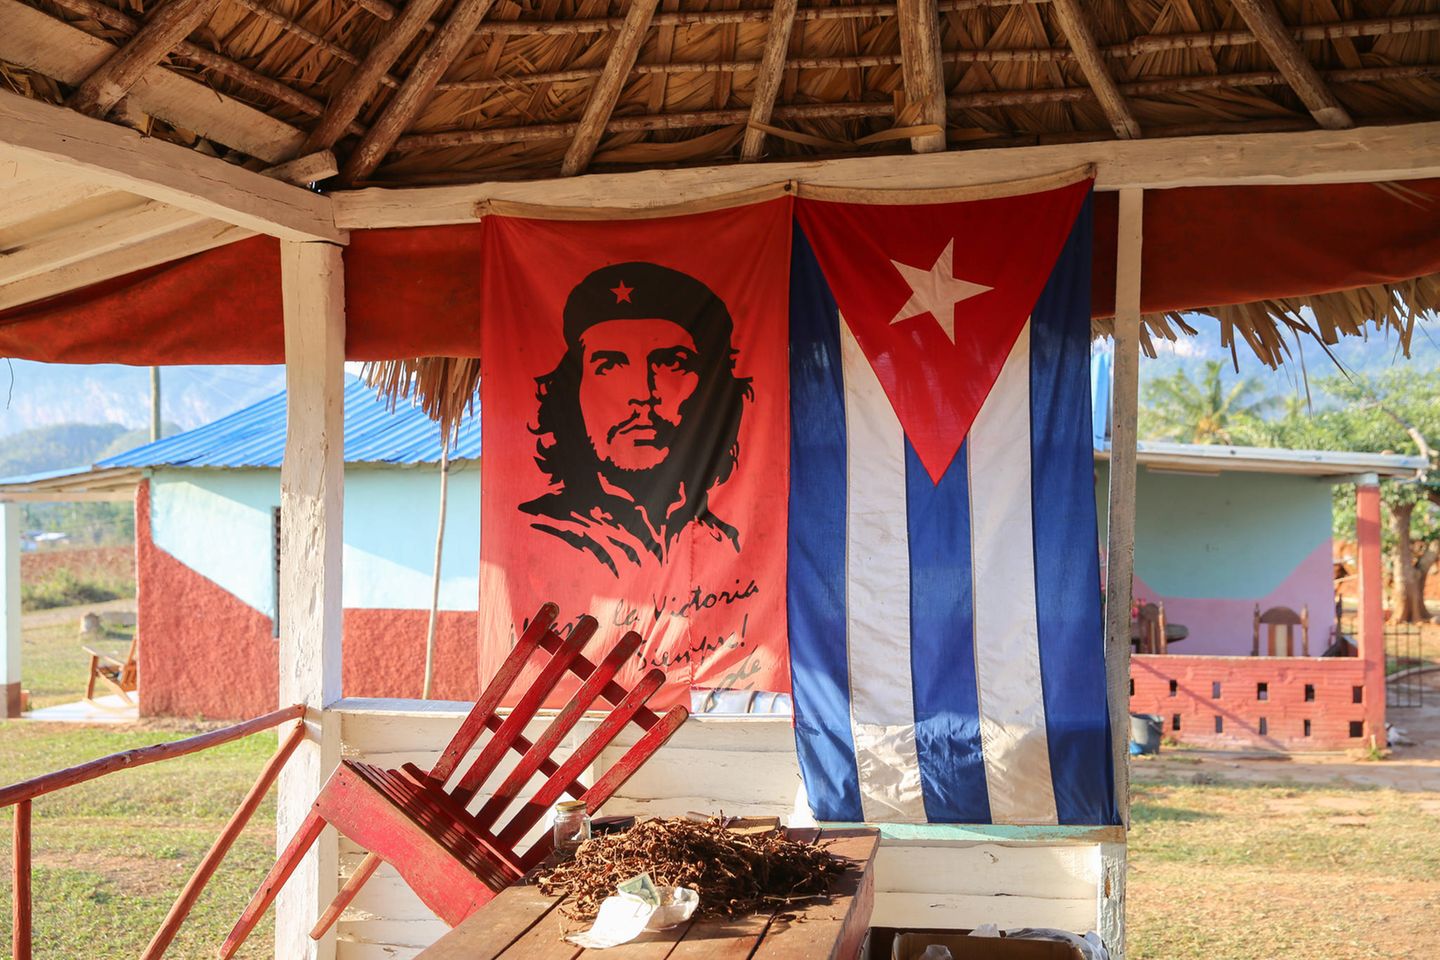 Tabakplantage auf Kuba: Die alten Revolutionshelden sind immer noch sehr präsent auf der Insel